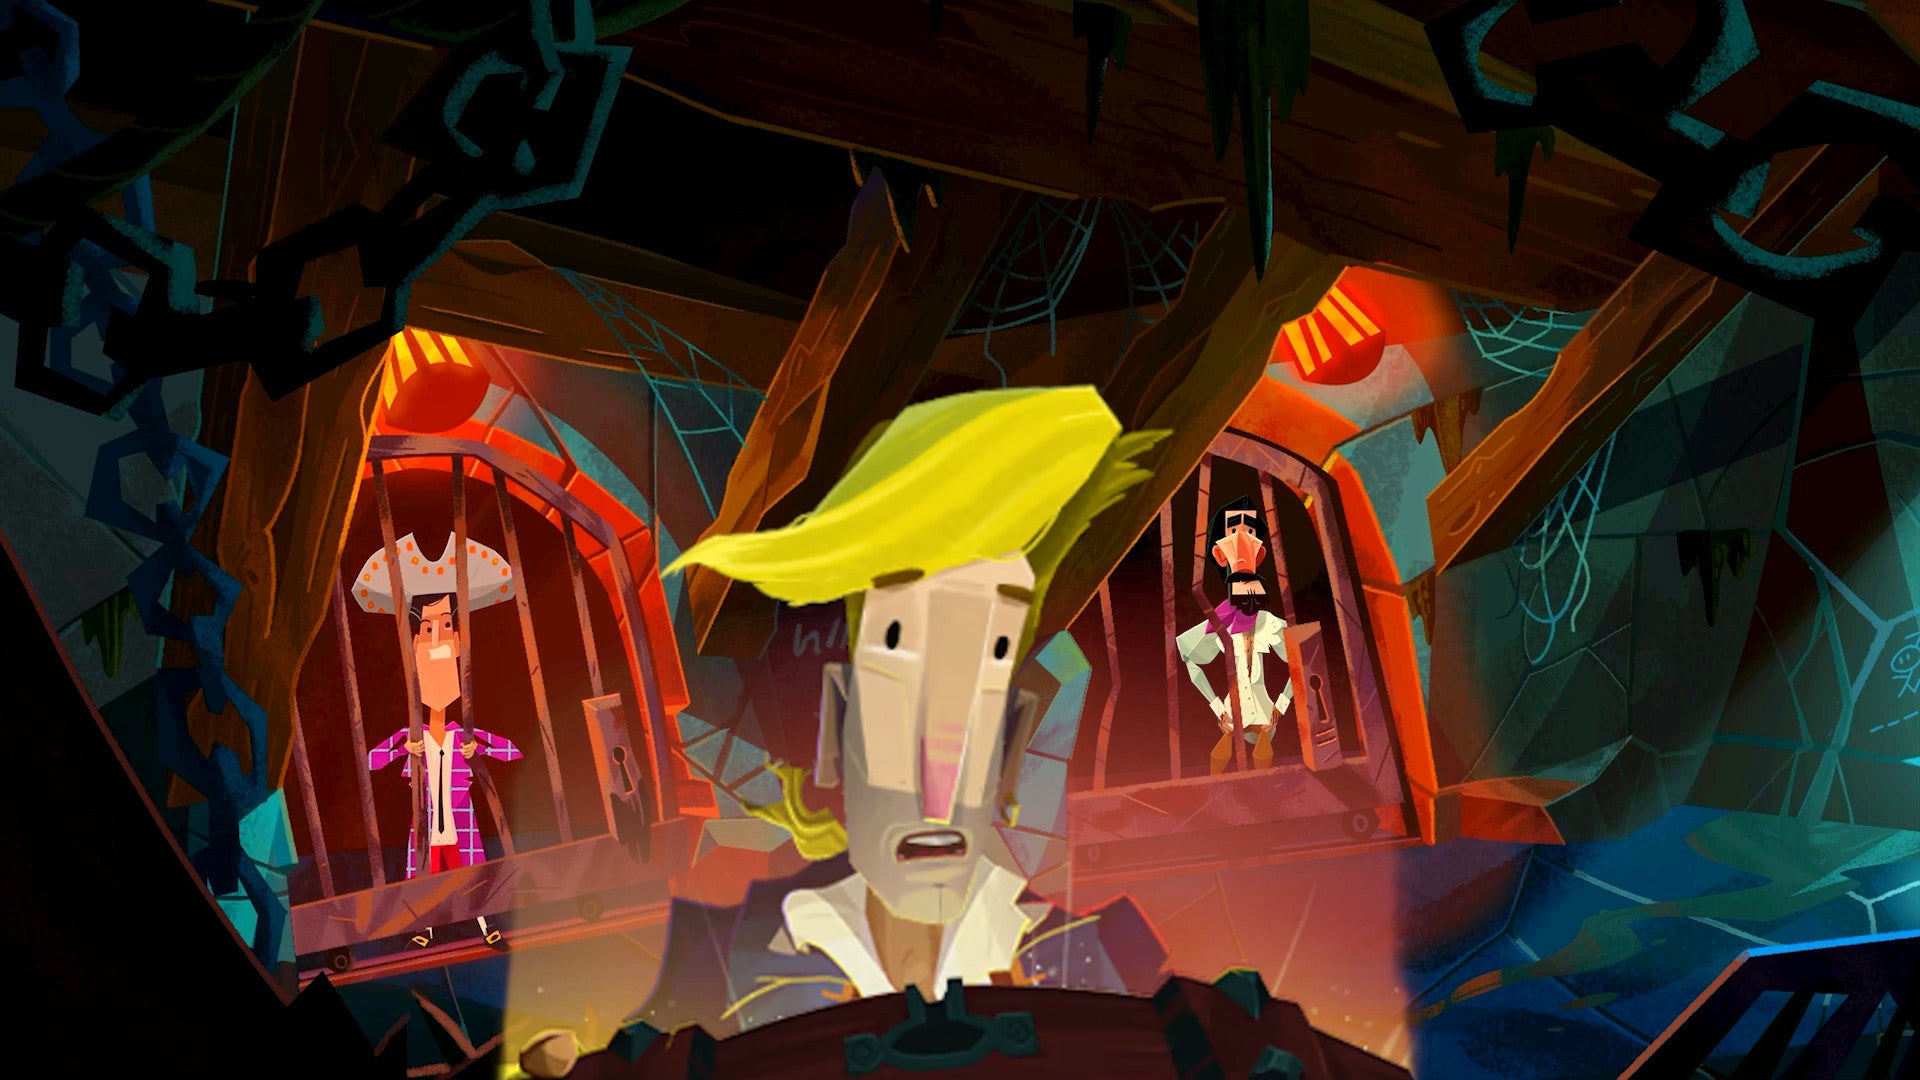 Bilder zu Return to Monkey Island: Neuer Spielausschnitt wird Erinnerungen bei euch wecken